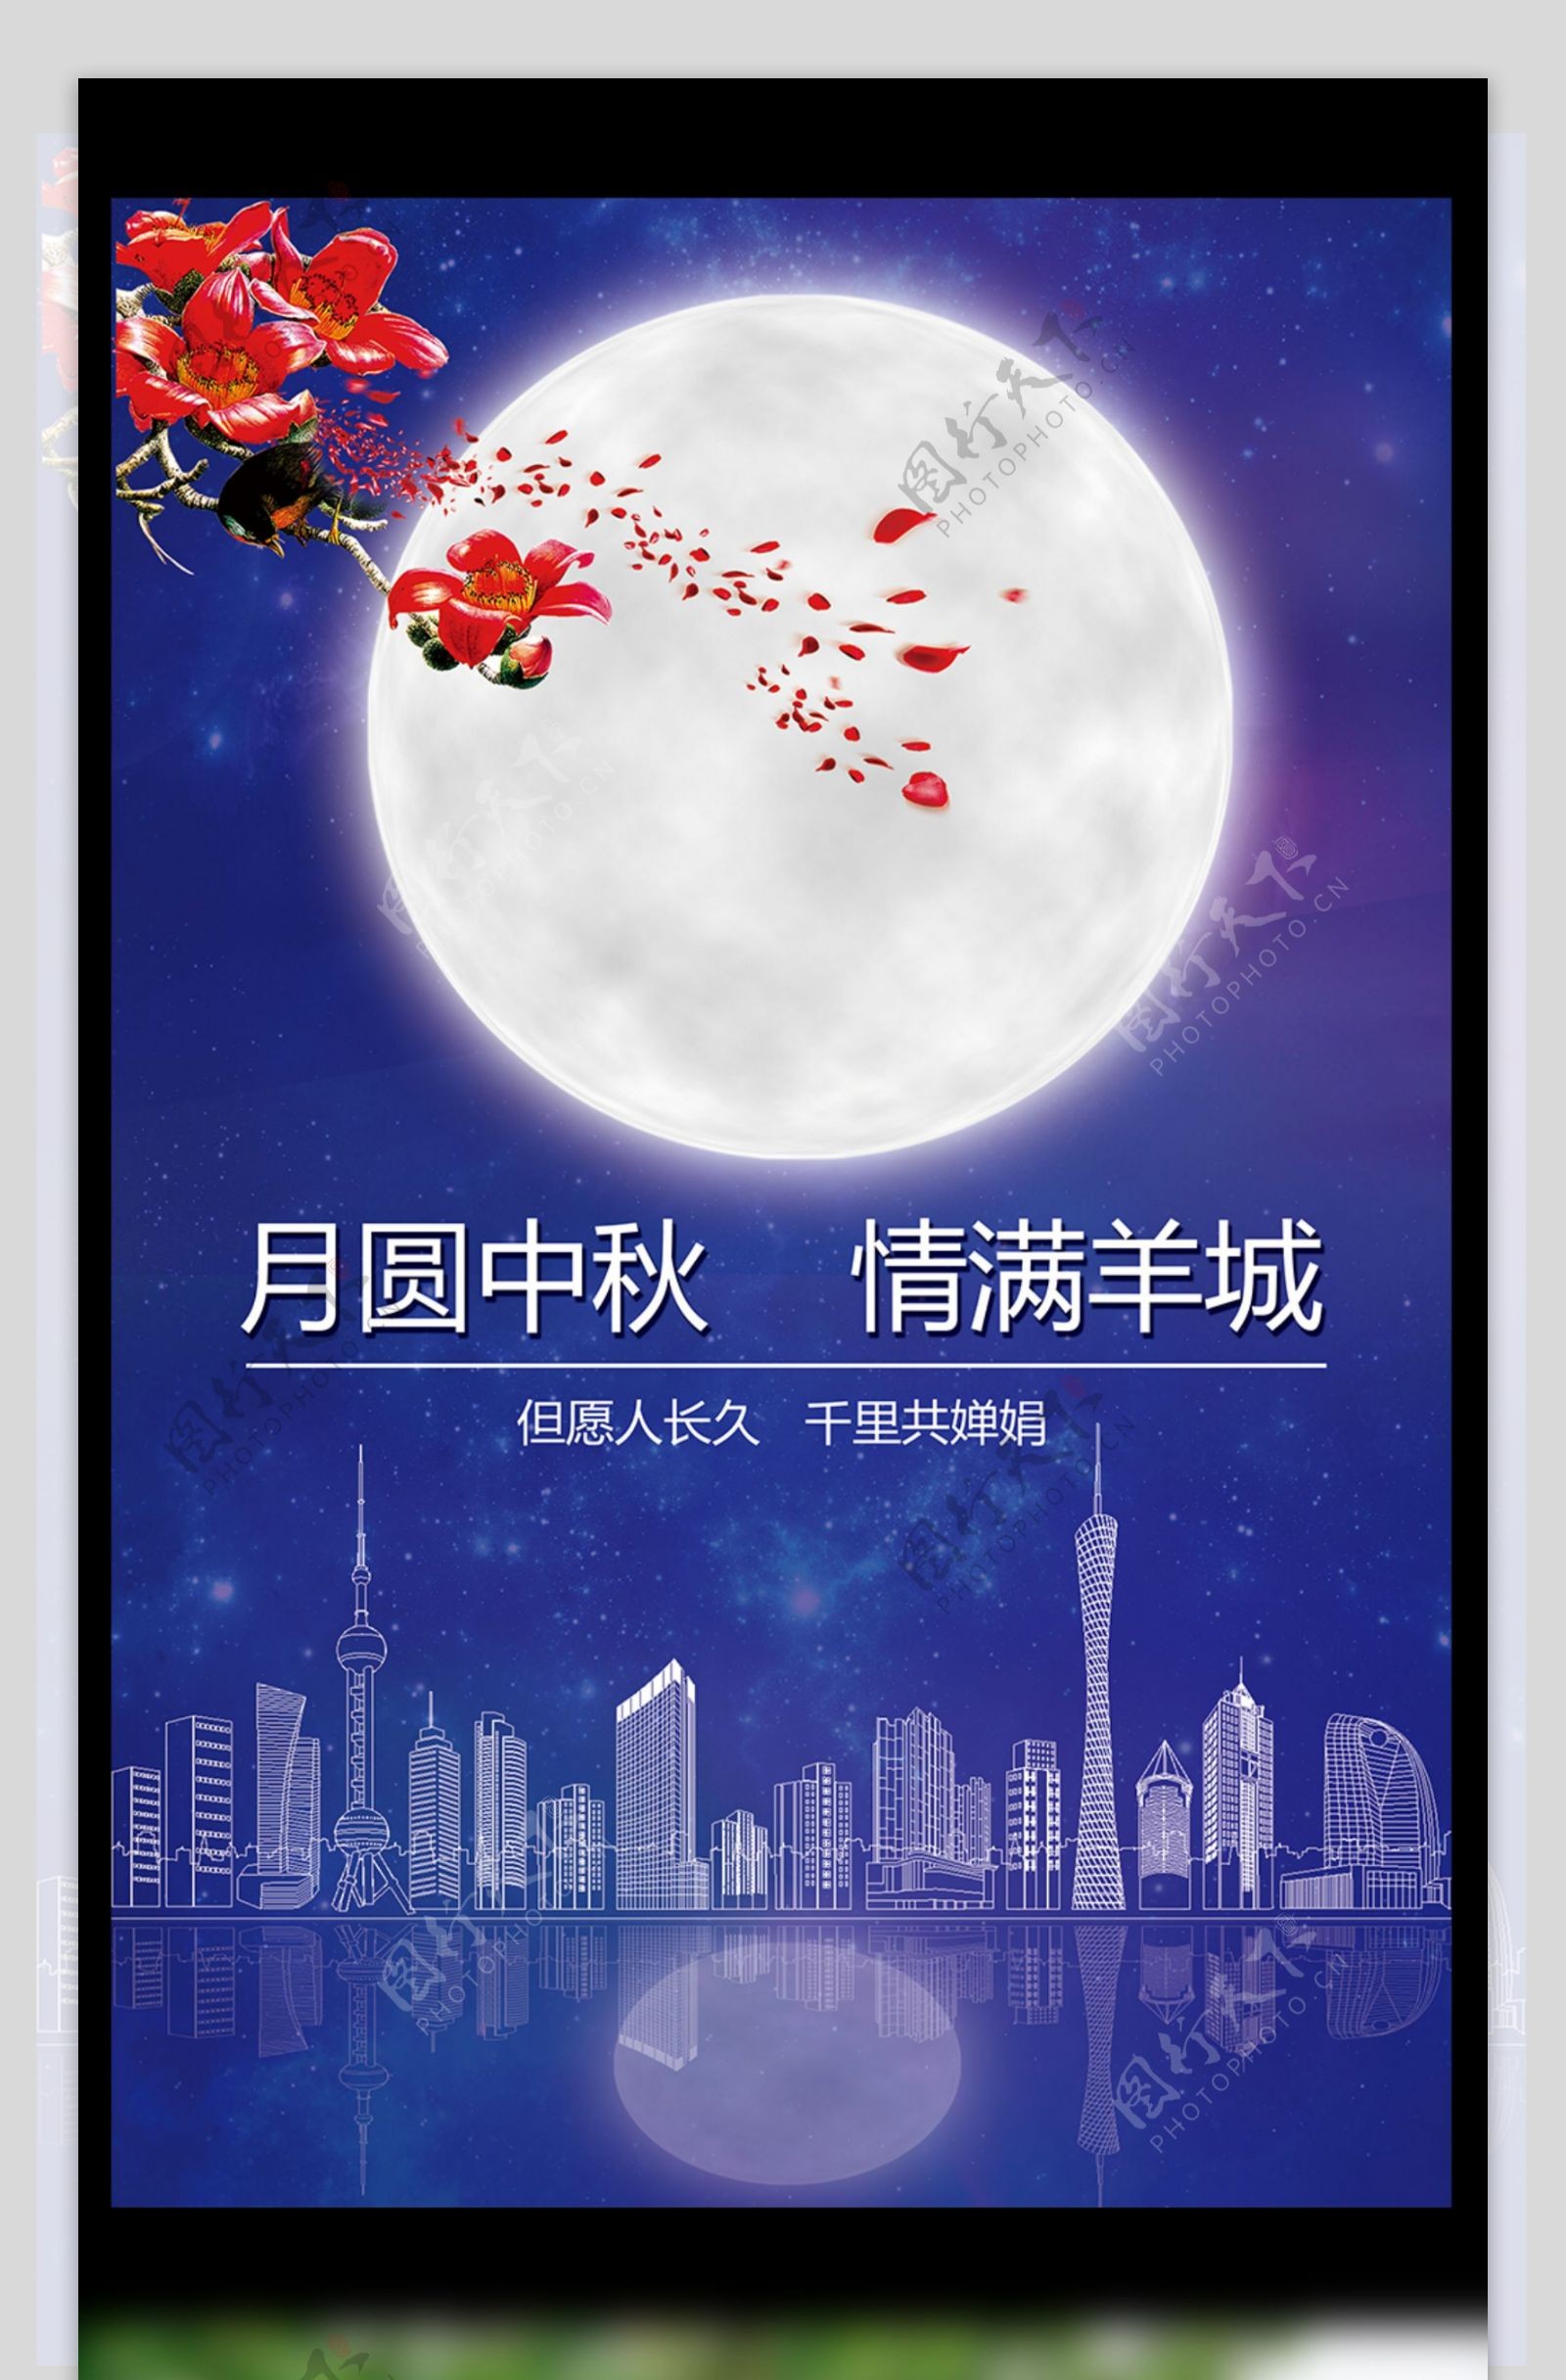 2017年蓝色羊城中秋节海报